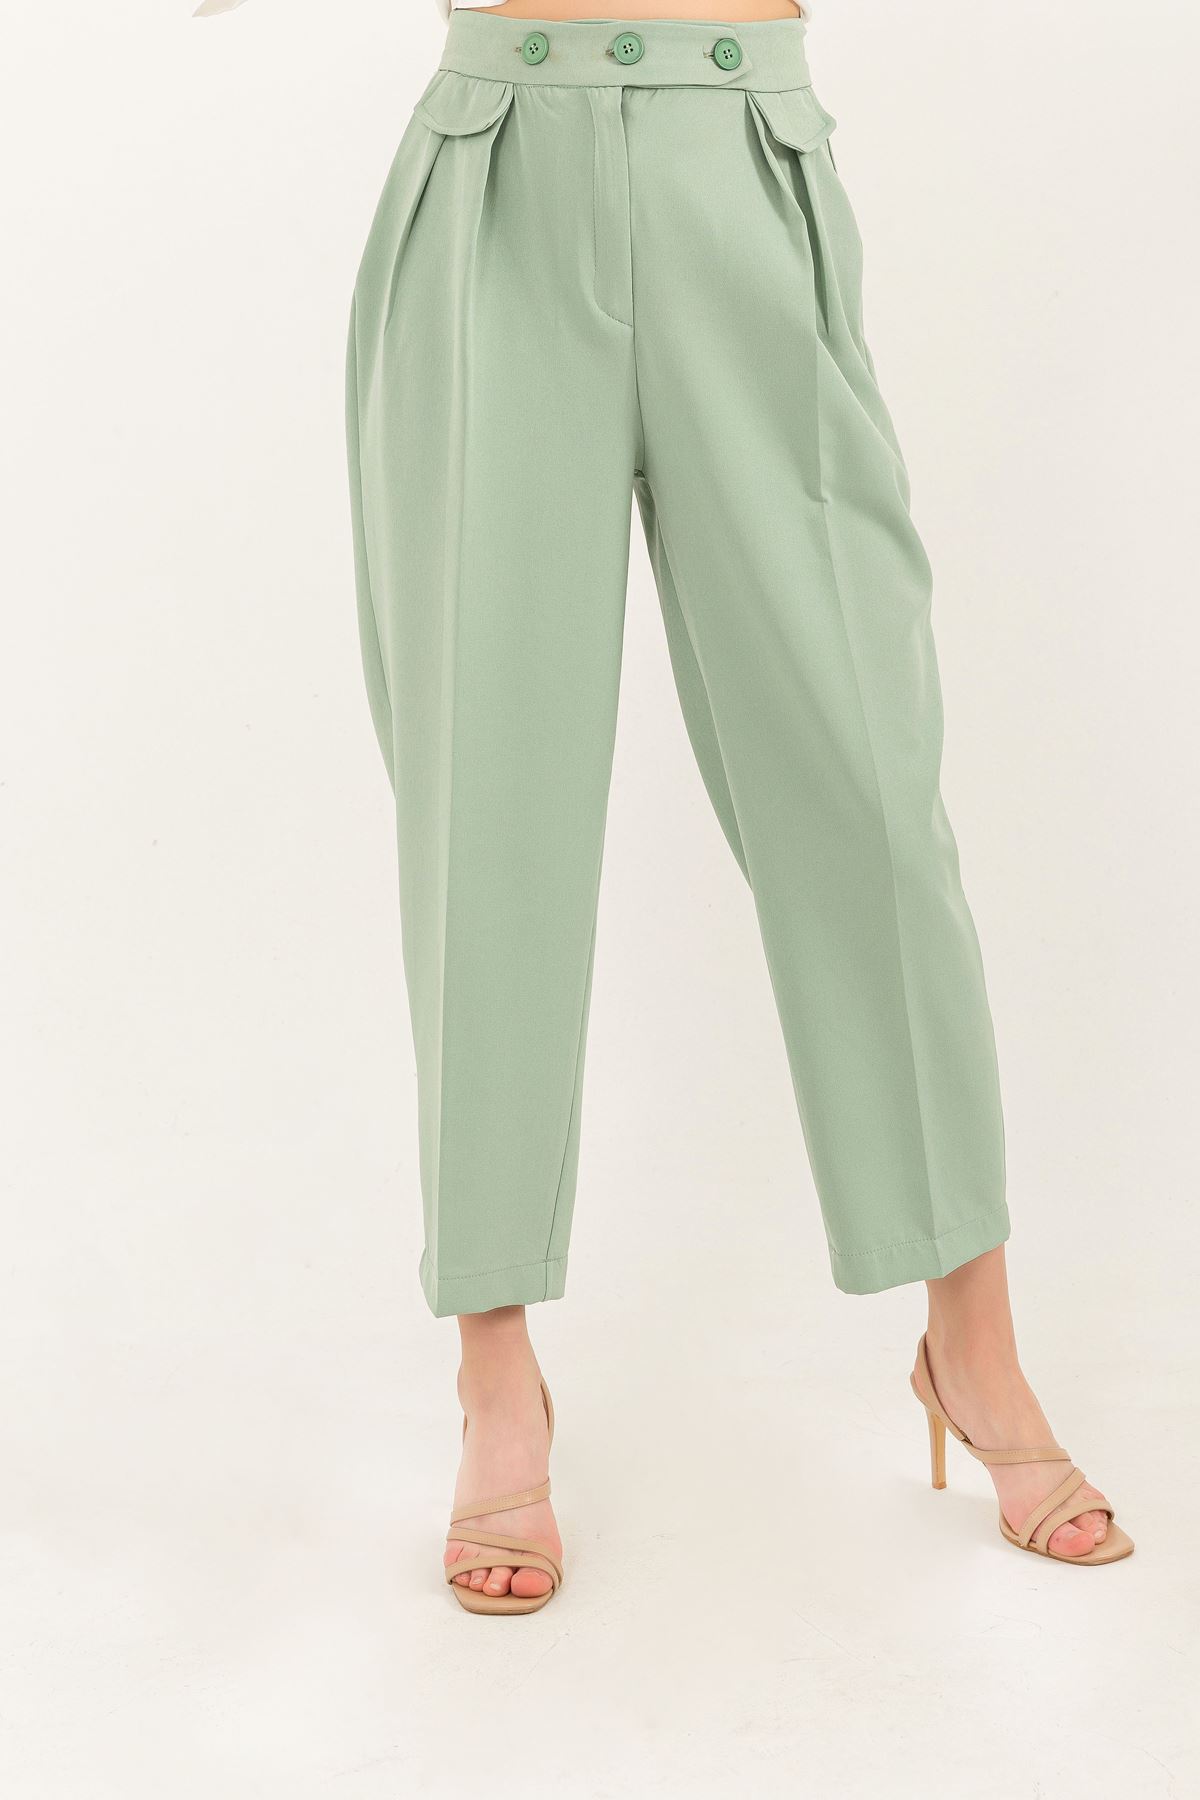 Atlas Kumaş Bilek Boy Havuç Kesim Kadın Pantolon-Mint